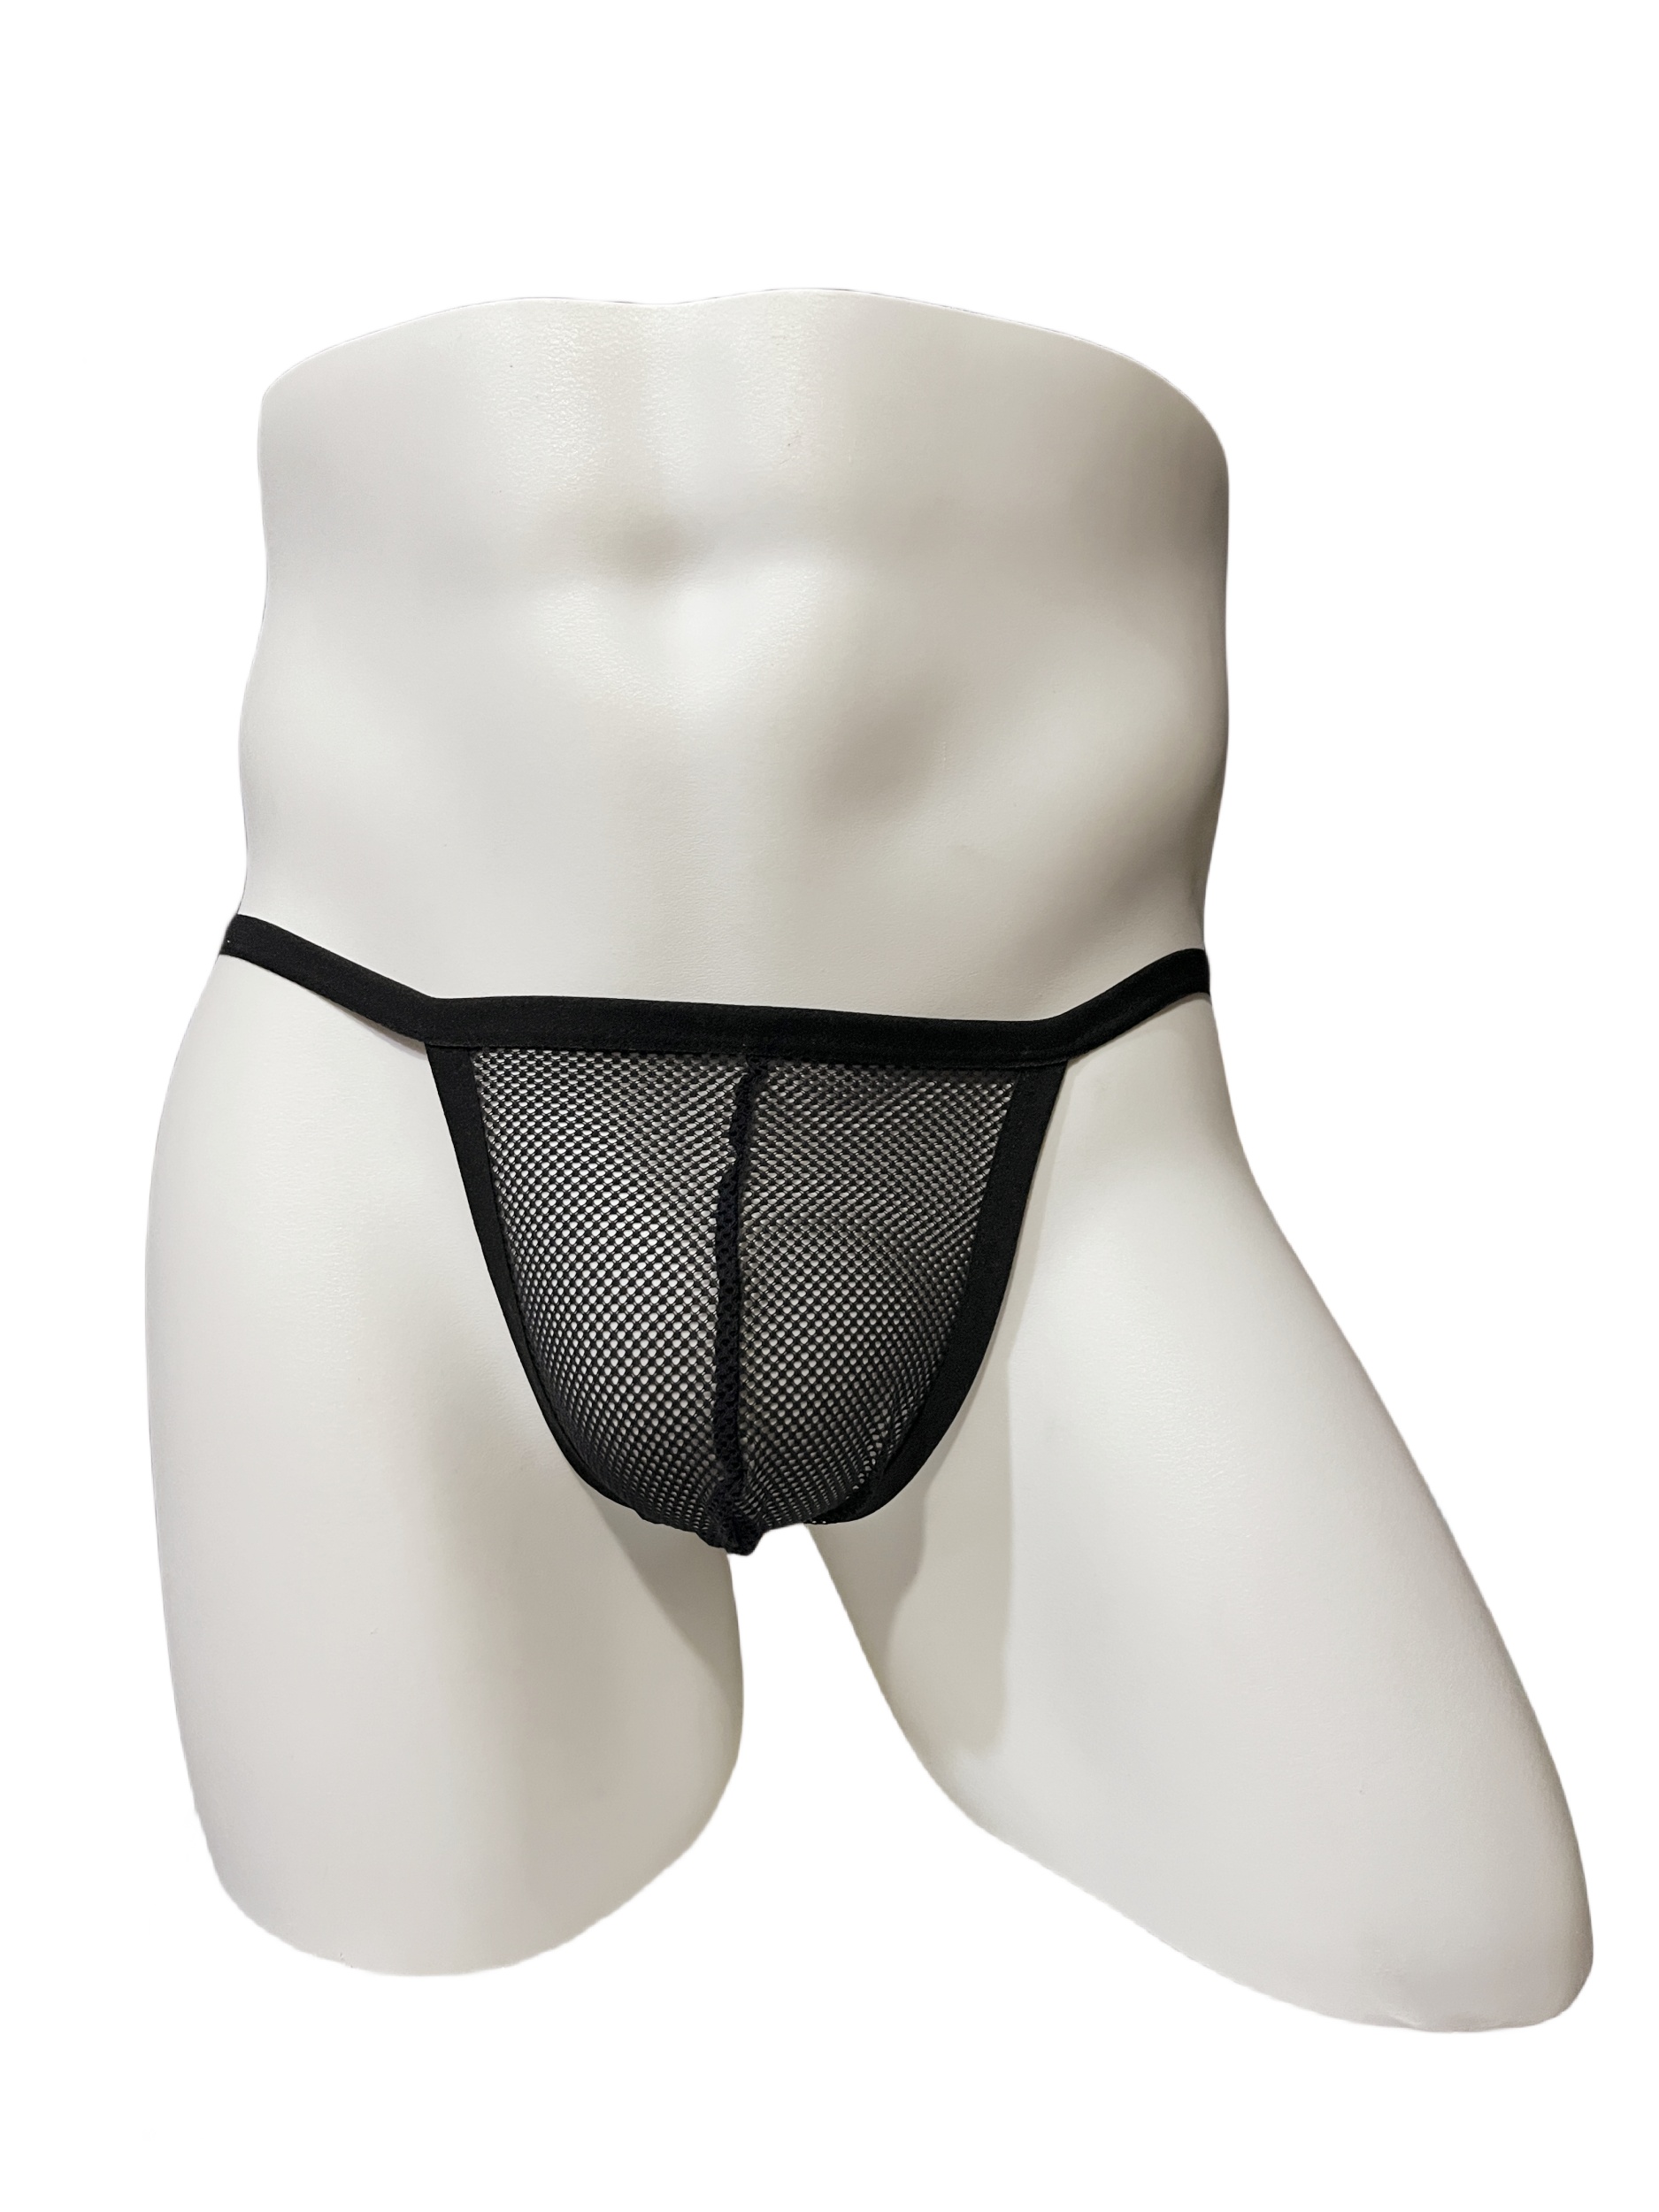 Detwen Men's Underwear with Pouch Mesh Tangas Mini Briefs